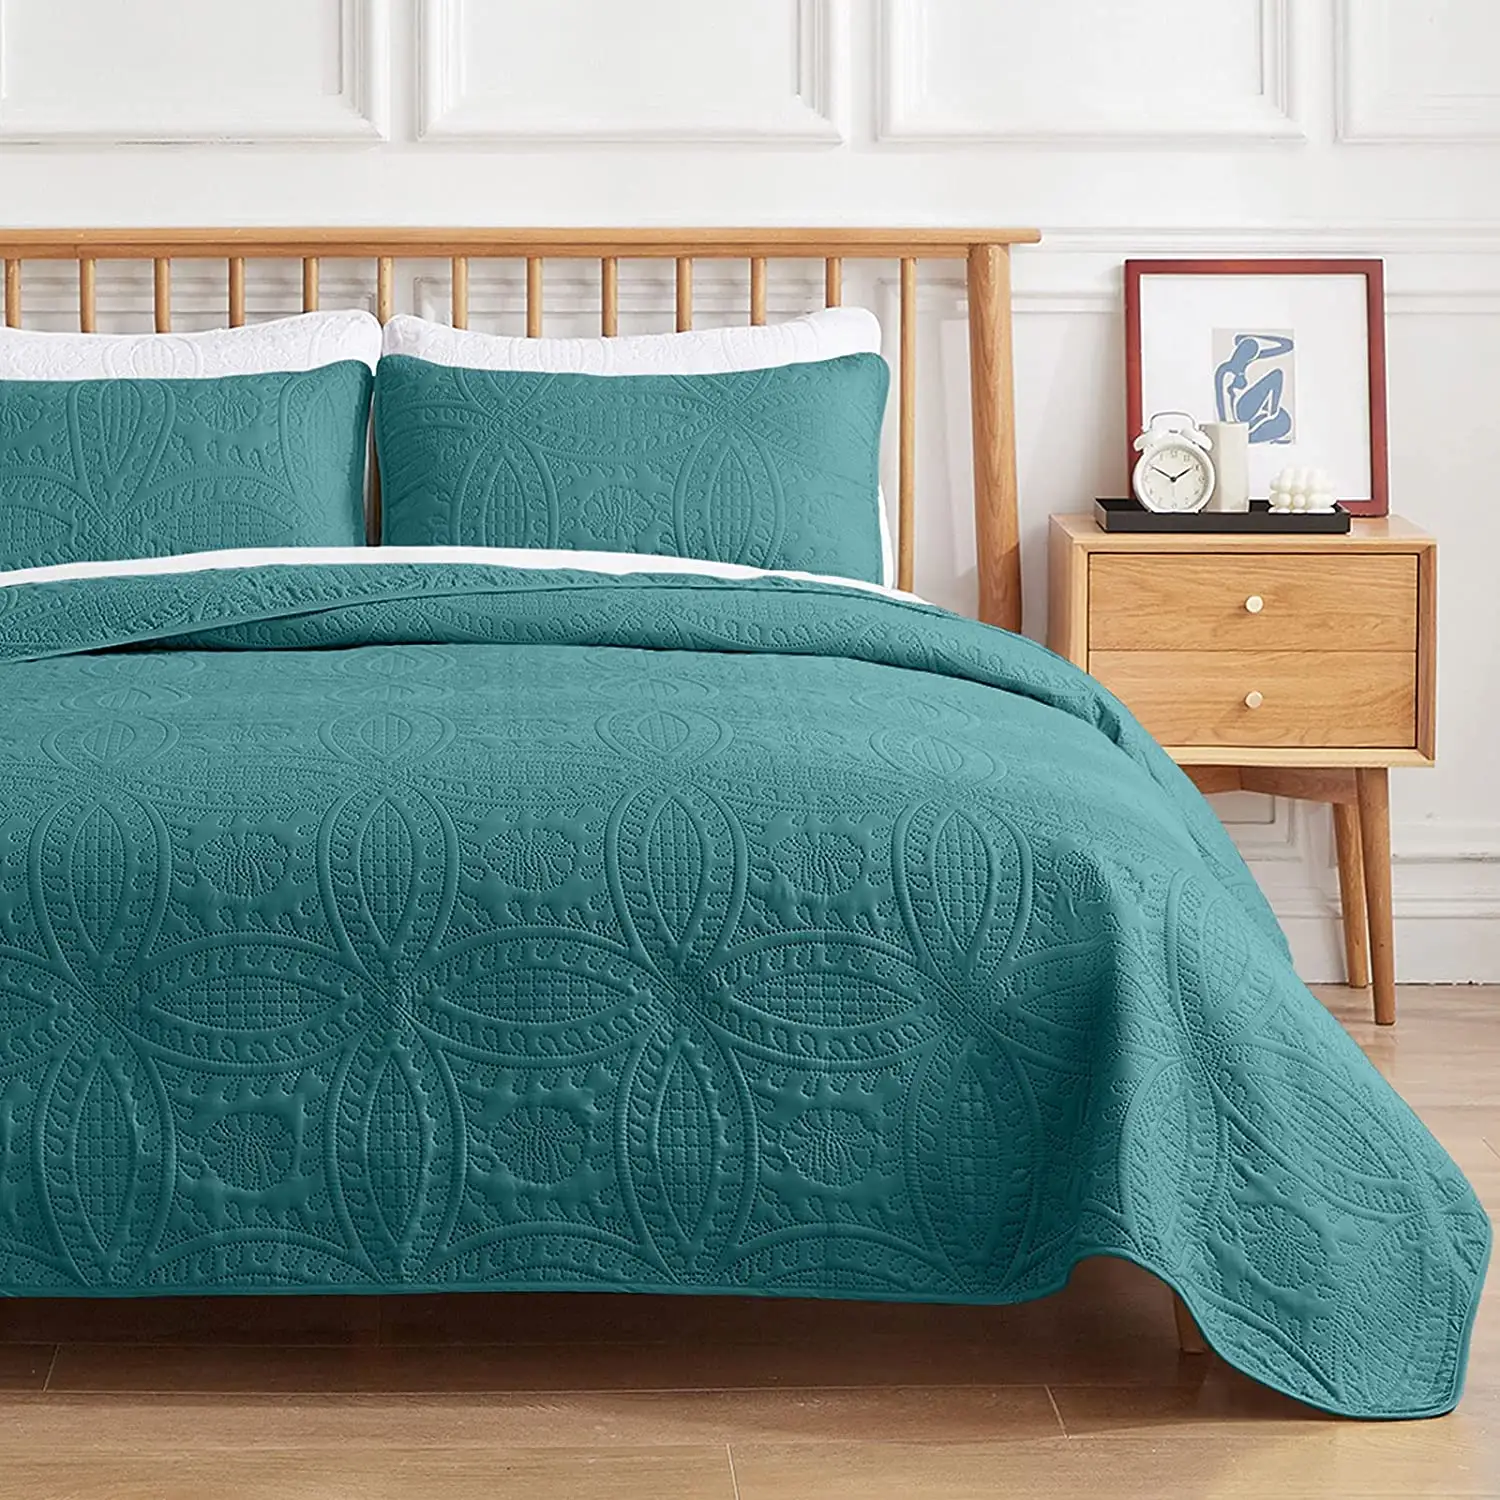 Polyester yatak örtüsü seti kumaş yumuşak tasarım çift kişilik yatak özellikler dayanıklı ev pamuk % 100% yorgan yatak örtüleri